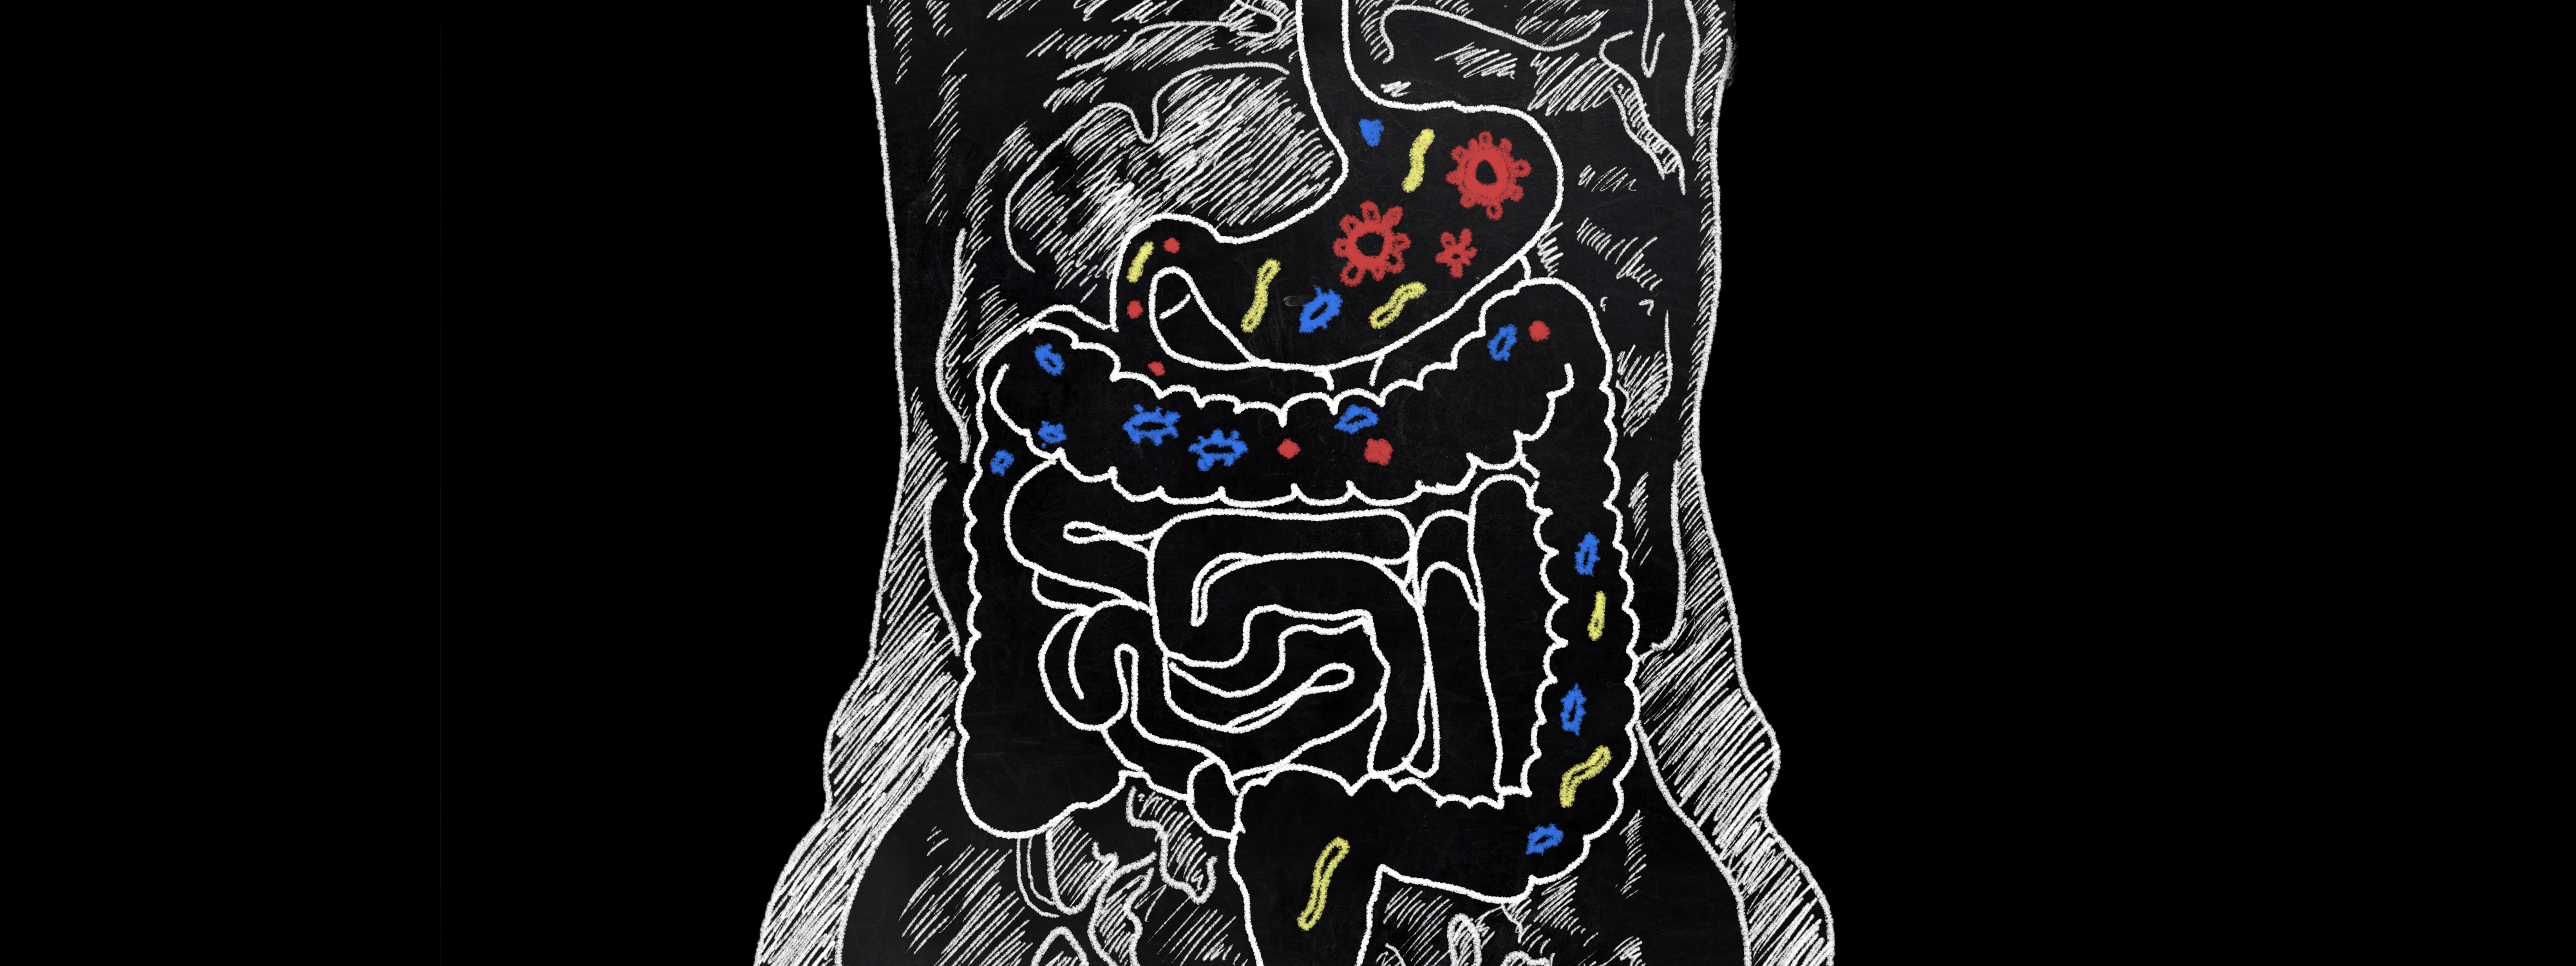 Image of gut bacteria on blackboard